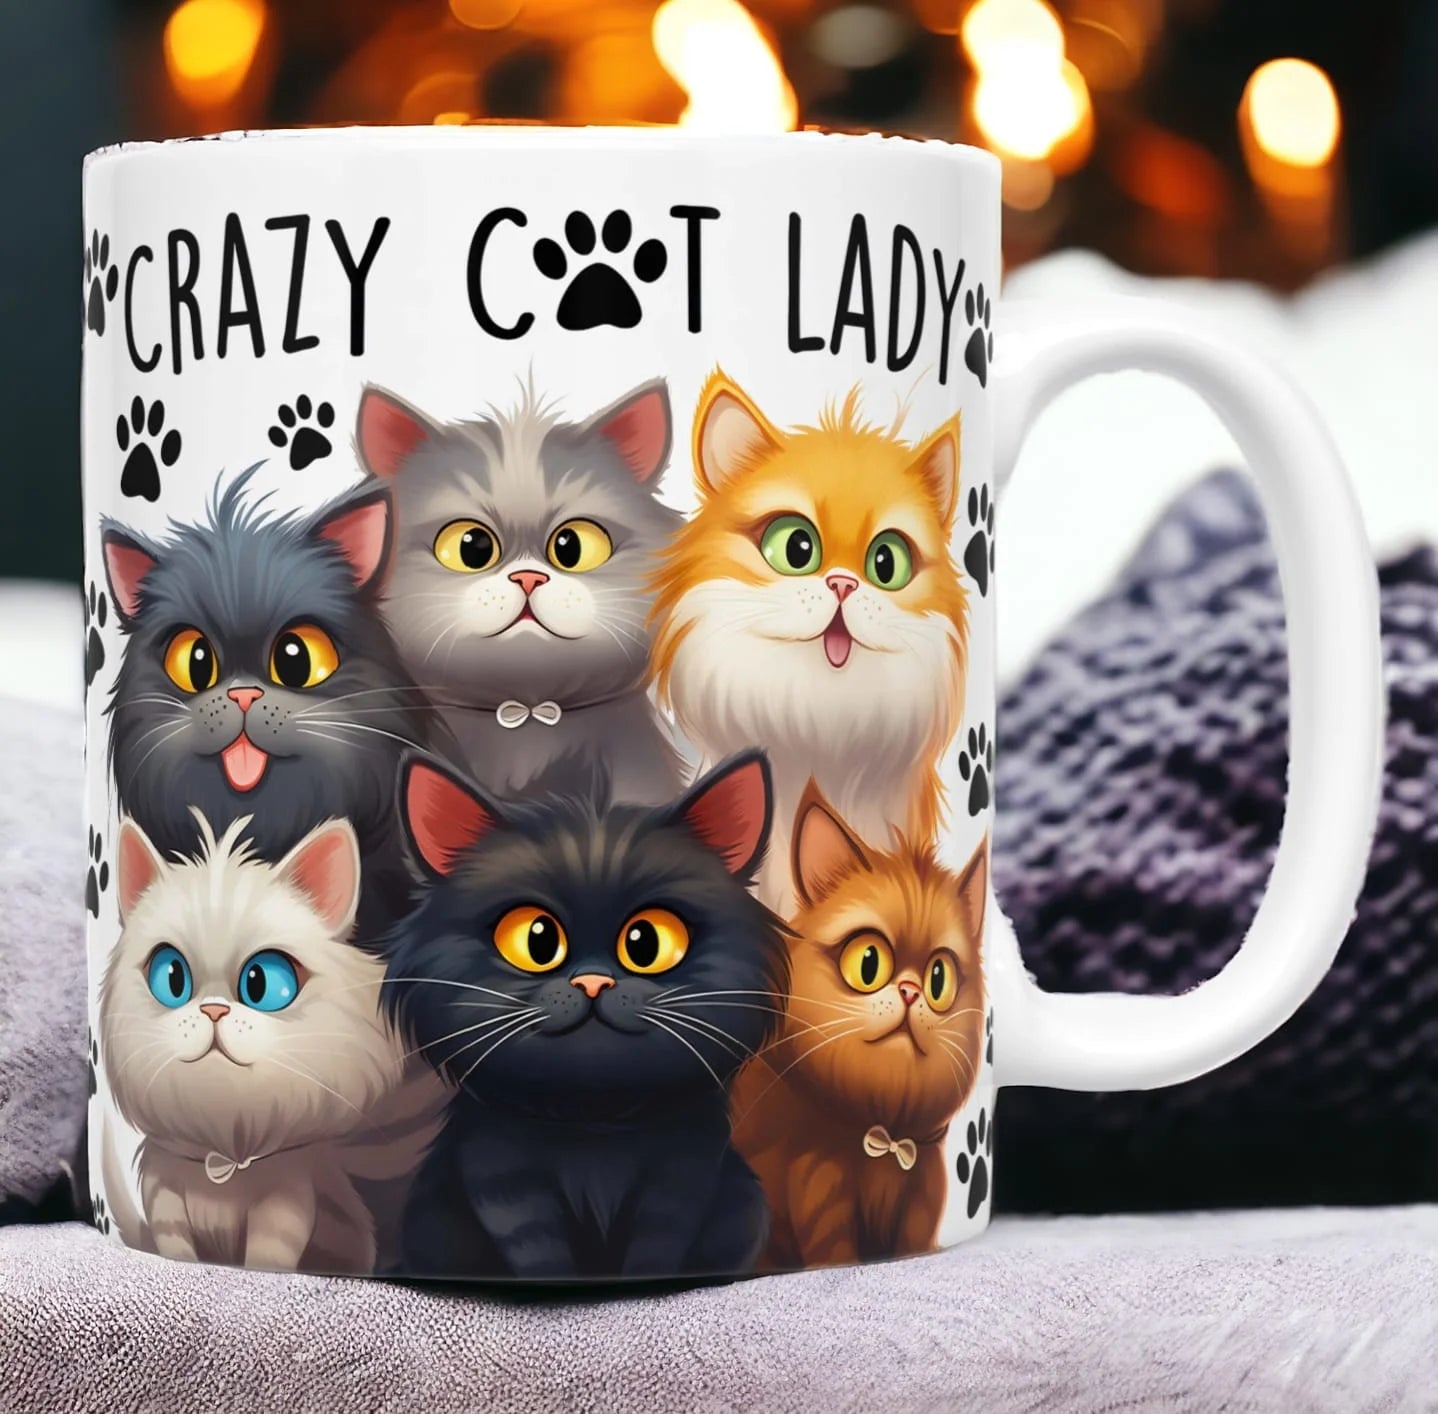 Cana personalizată, Crazy cat lady, Ceramica, Alb, 350 ml